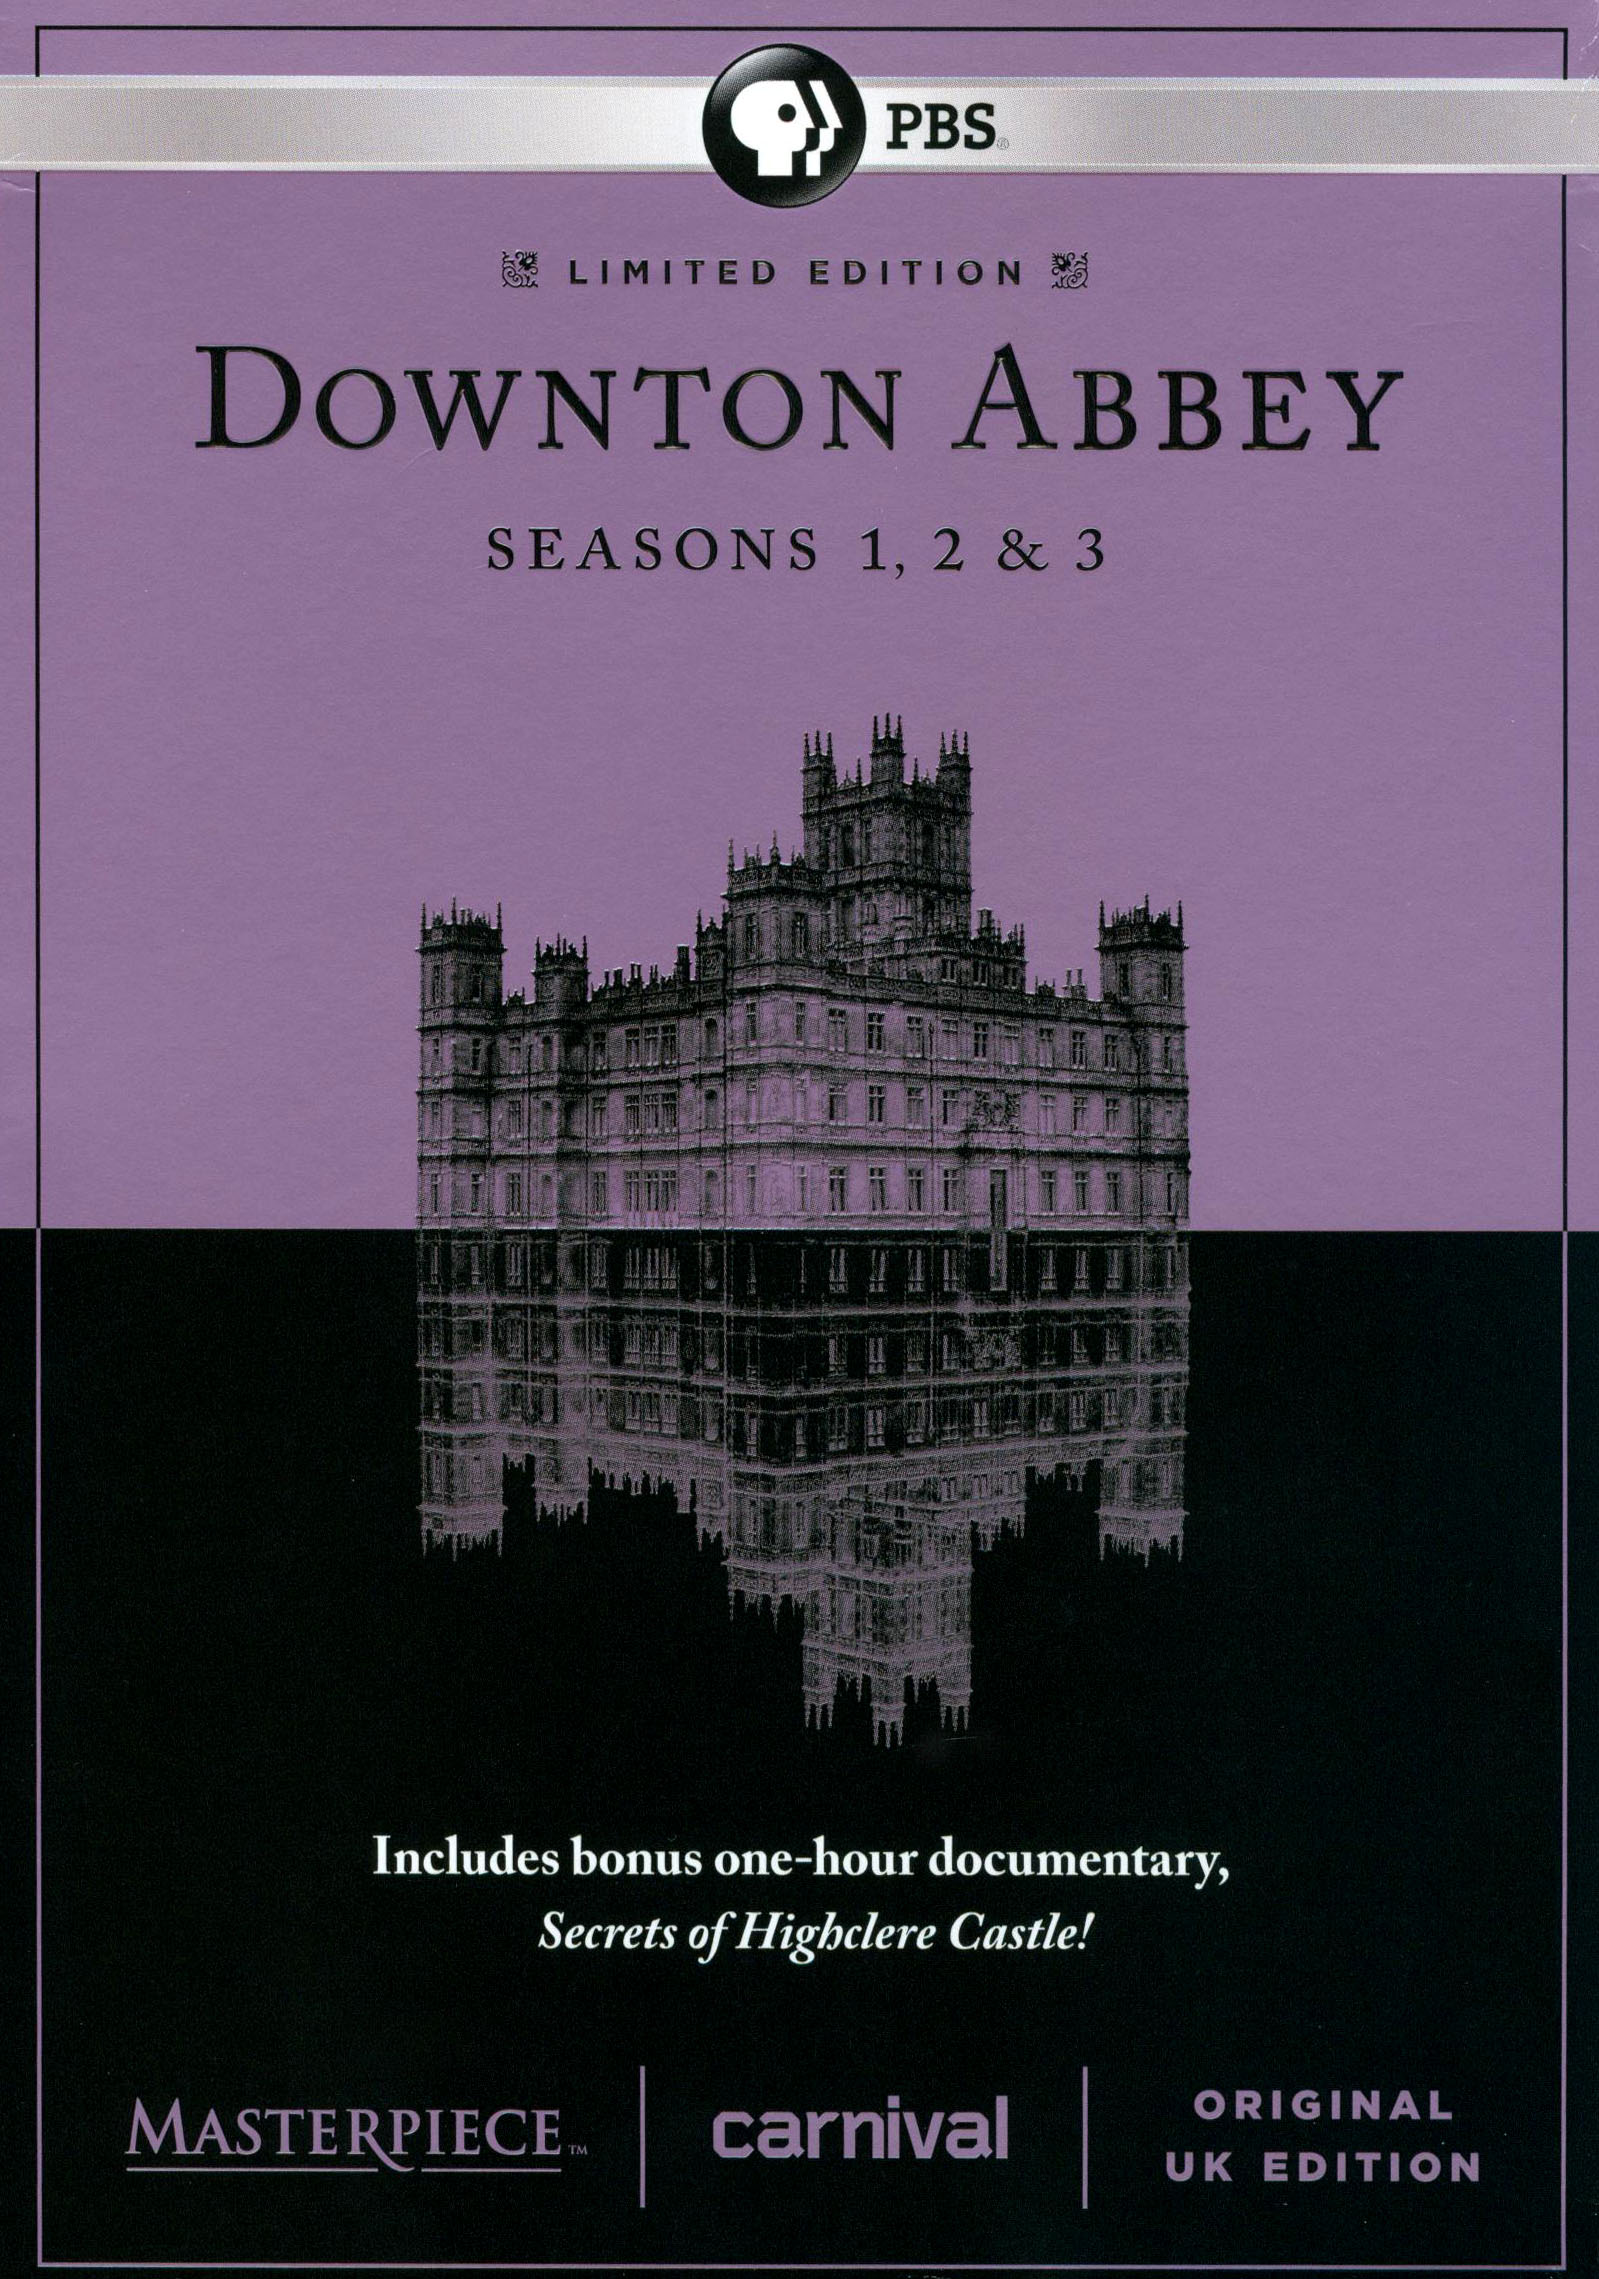 Downton Abbey Seasons 1 & 2 Mini Parallel Base Card CCC-33 